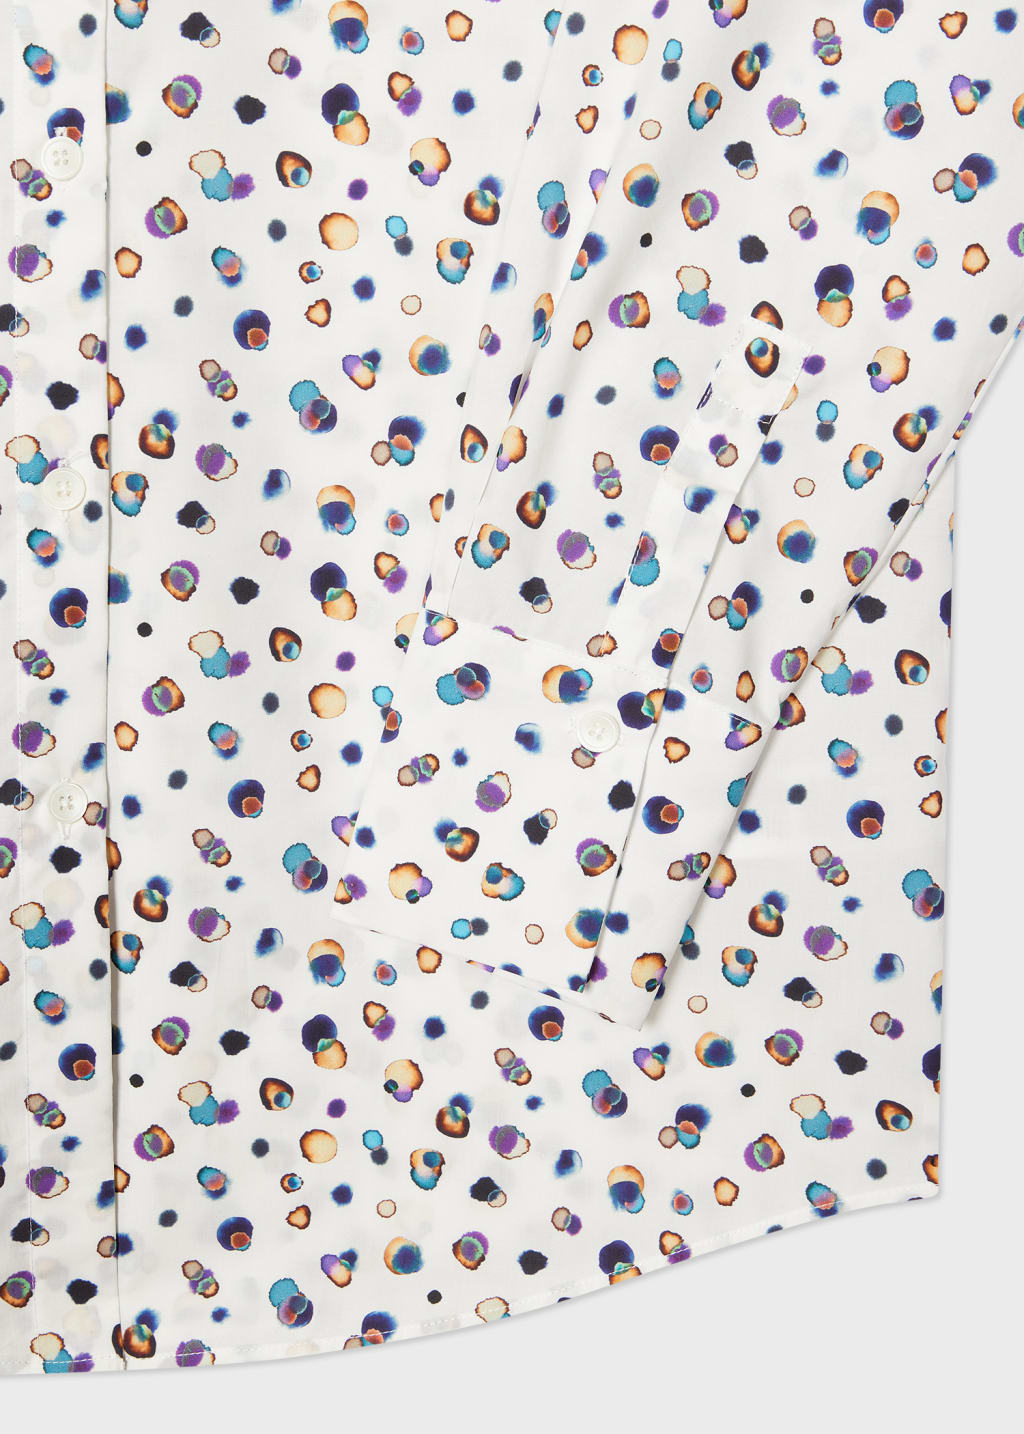 Detail View - Women's 'Polar Lights' Spot Cotton Shirt Paul Smith